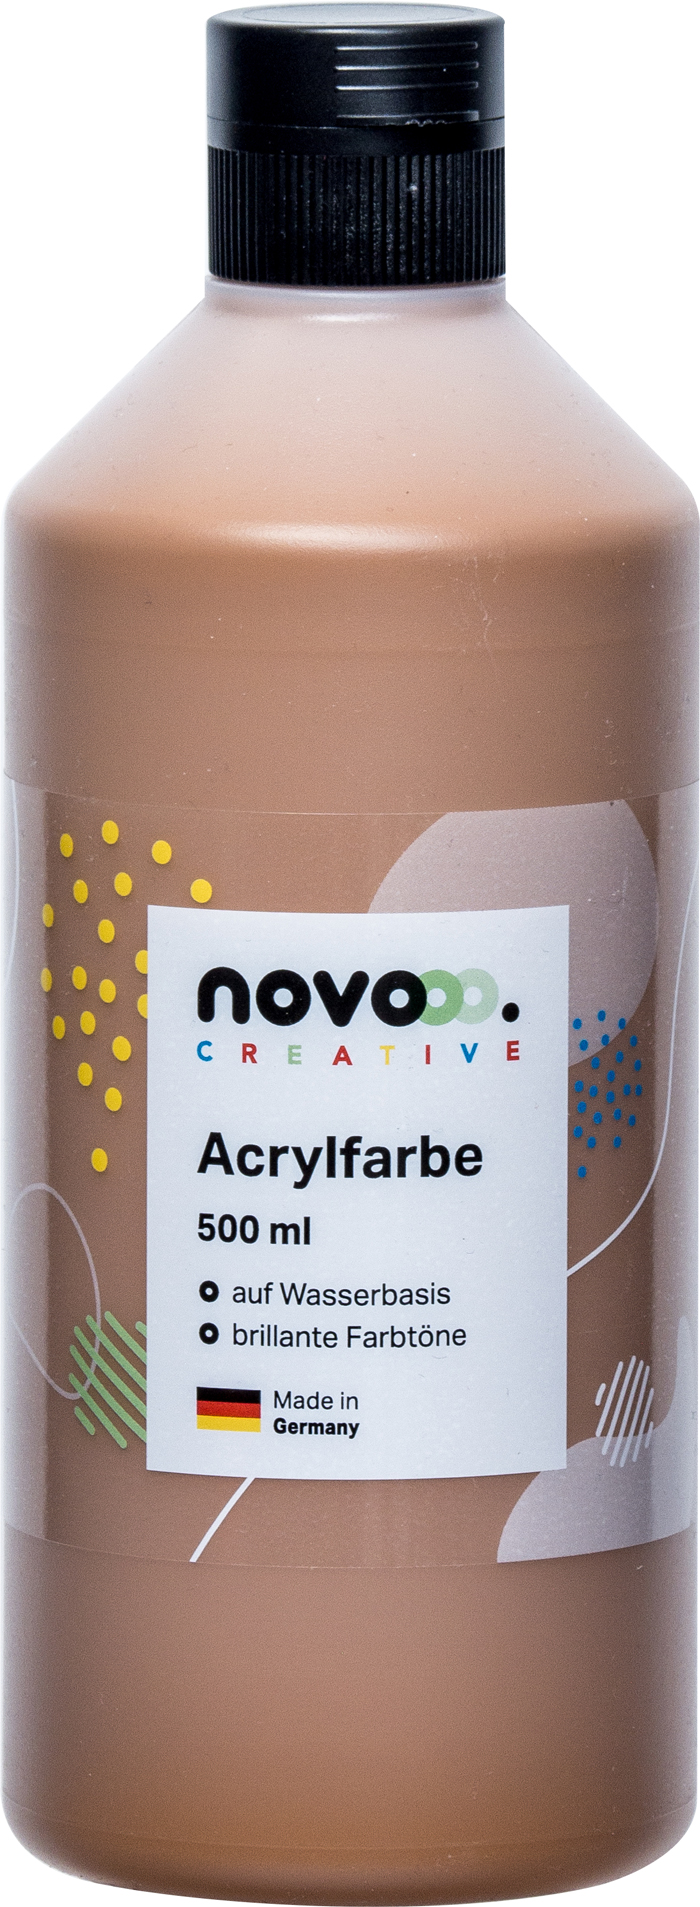 NOVOOO Creative Acrylfarbe 500 ml mittelbraun